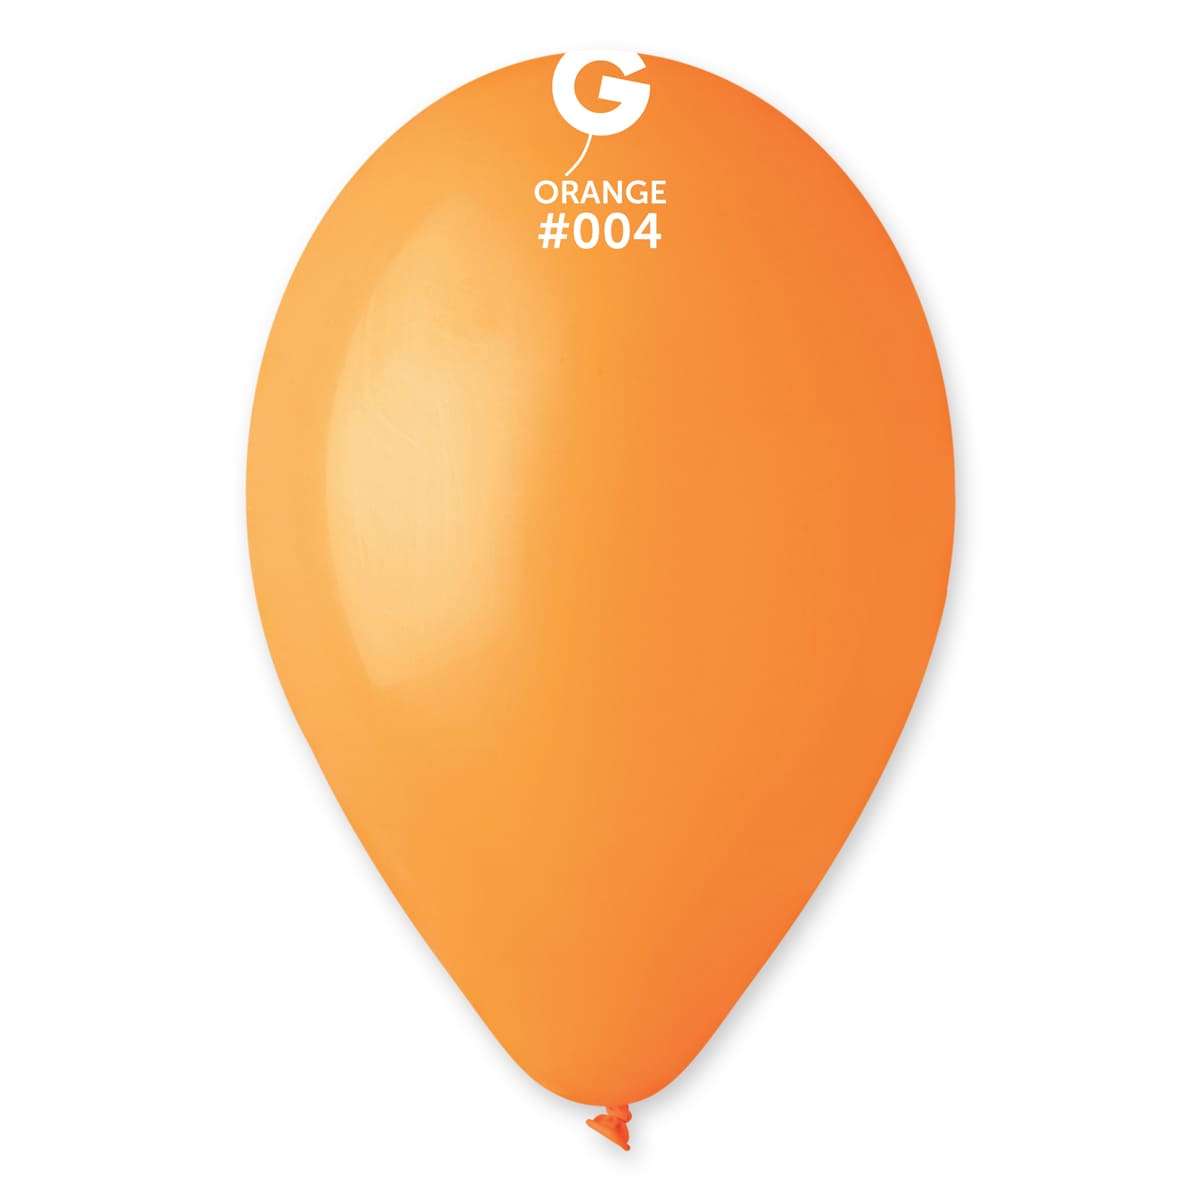 Оранжевый гелиевый шарик пастель, 25-28 см Италия картинка